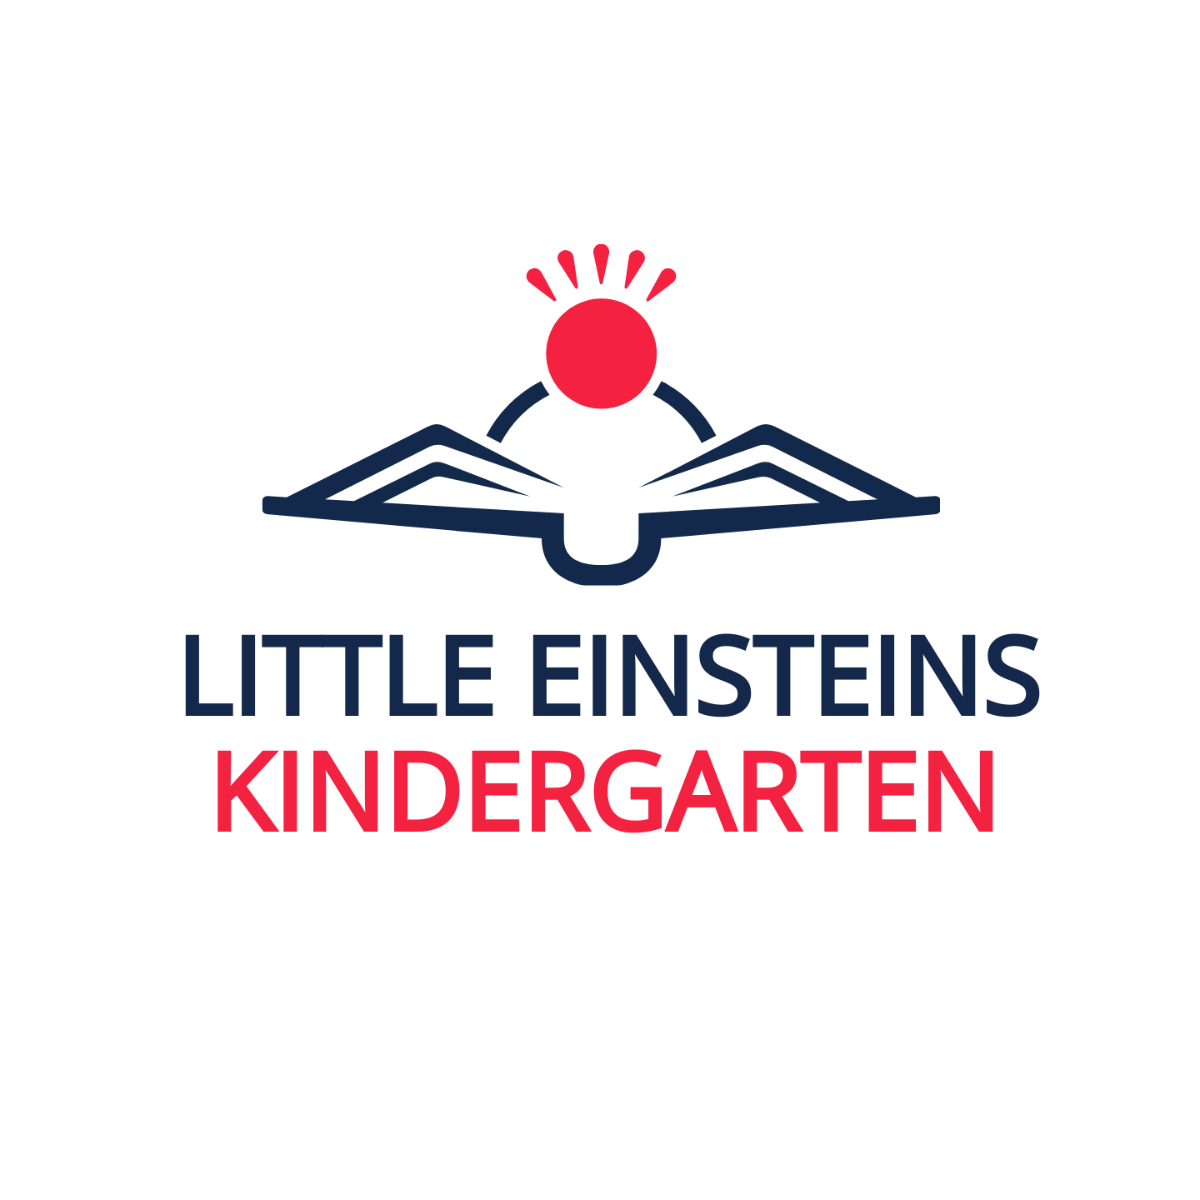 Little Einsteins Kindergarten Logo Template